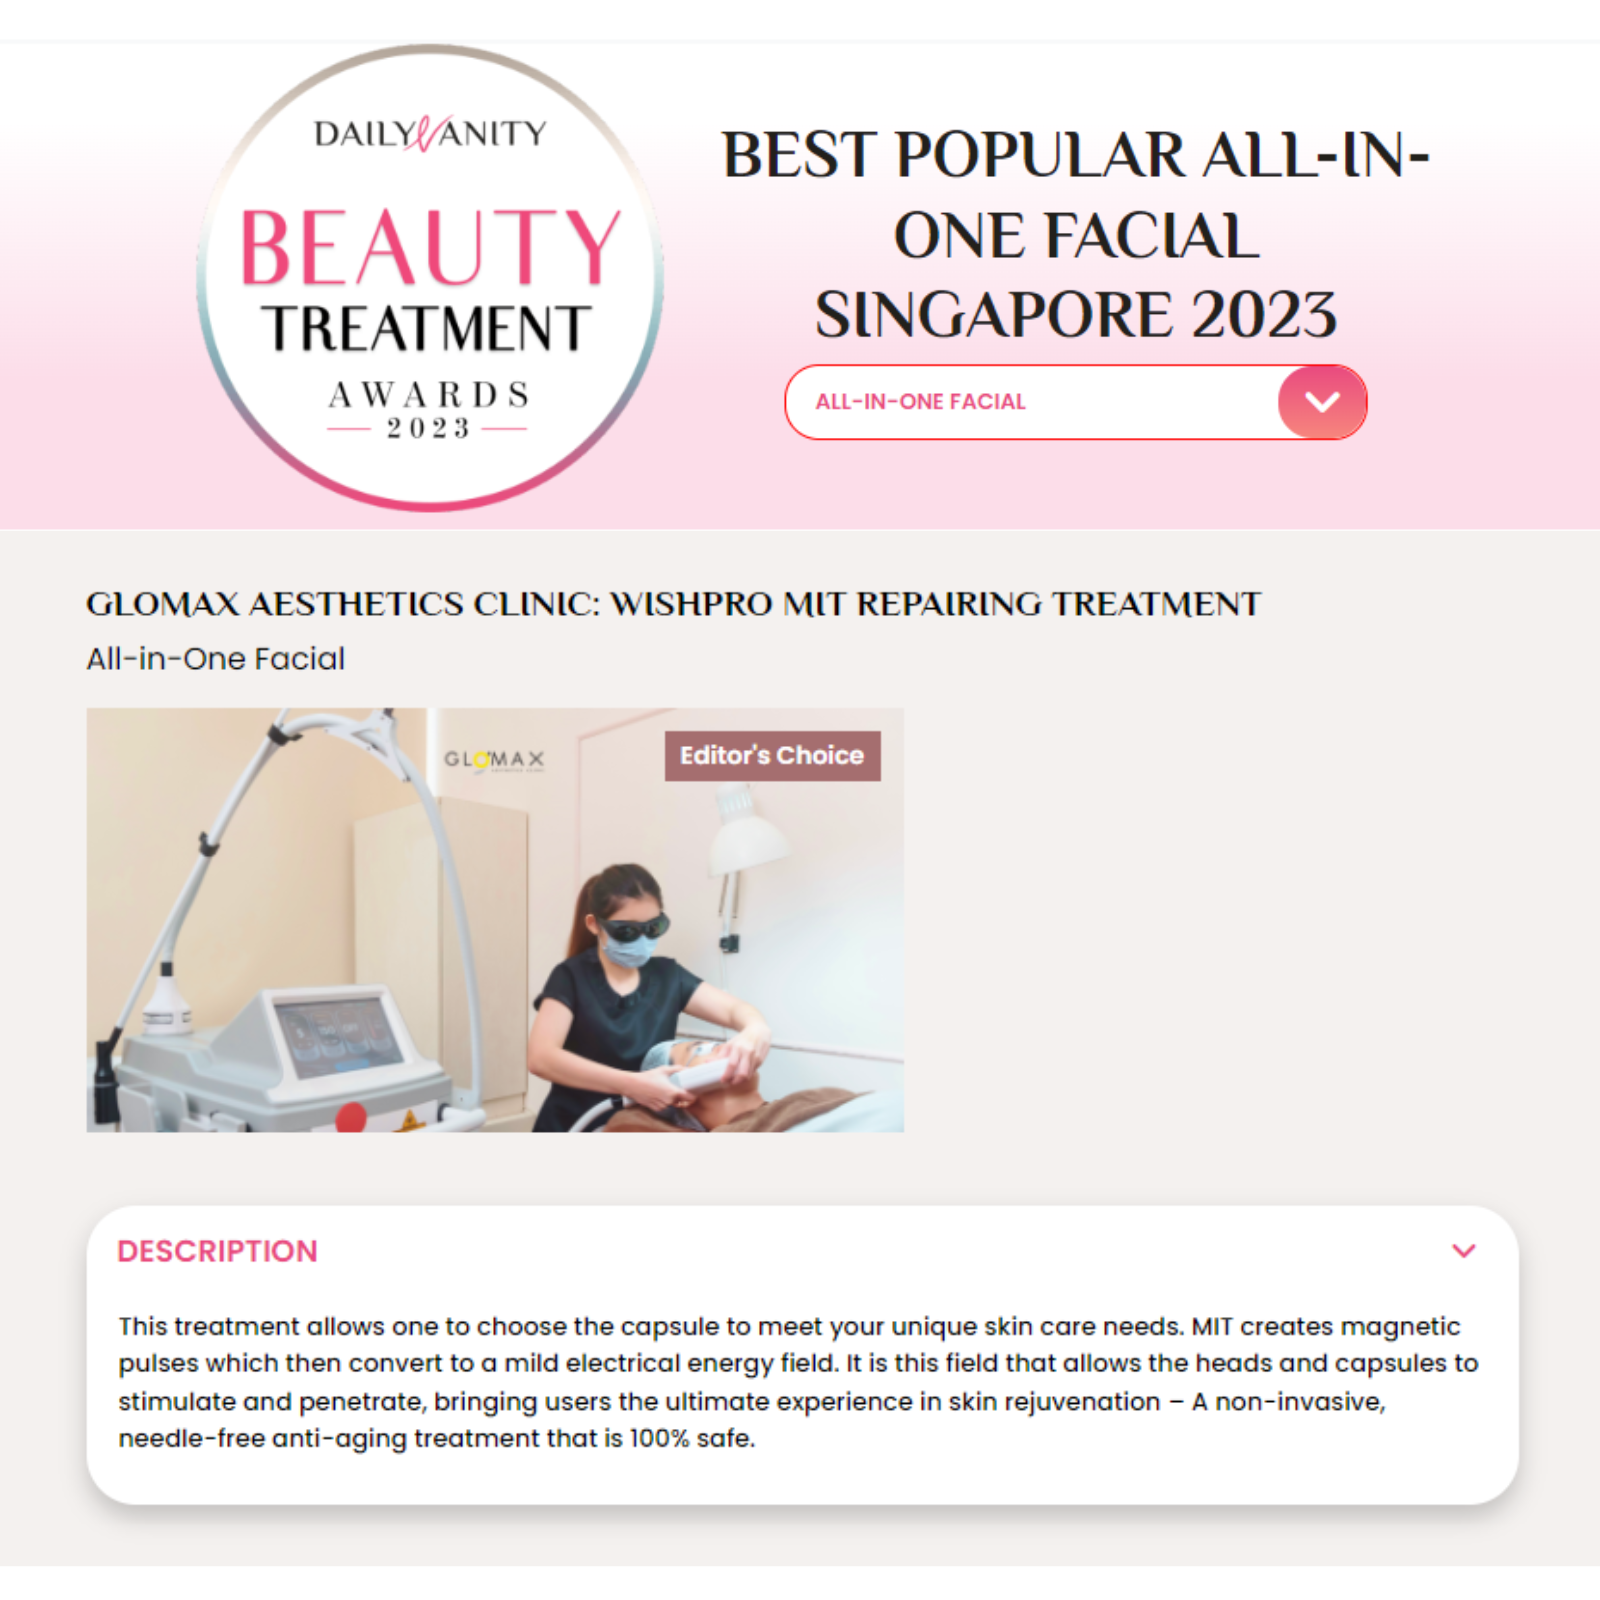 WishPro MIT Treatment Won the 2023 Daily Vanity Beauty Award